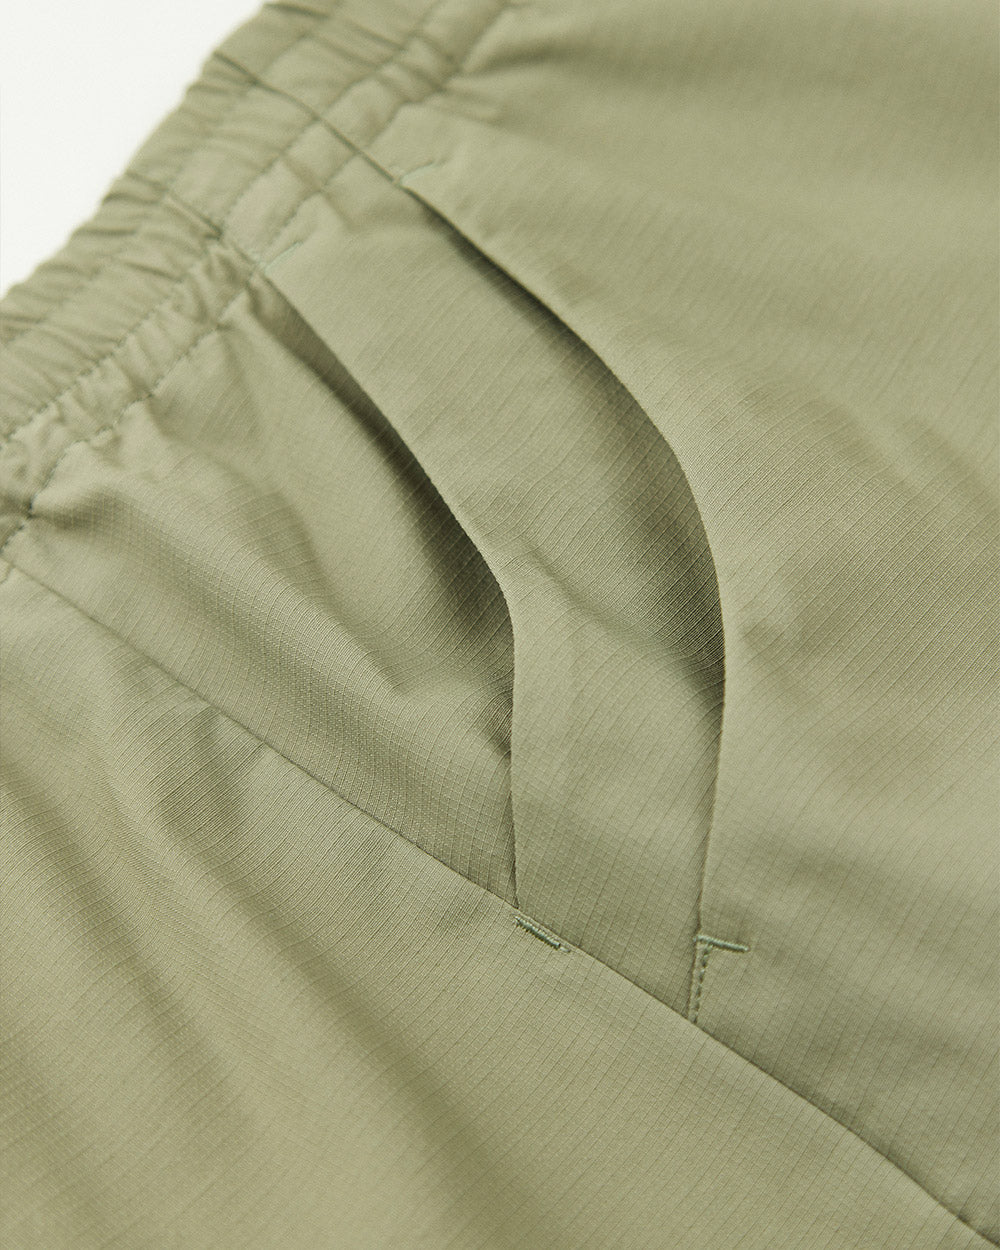 Rambling W-pocket Shorts